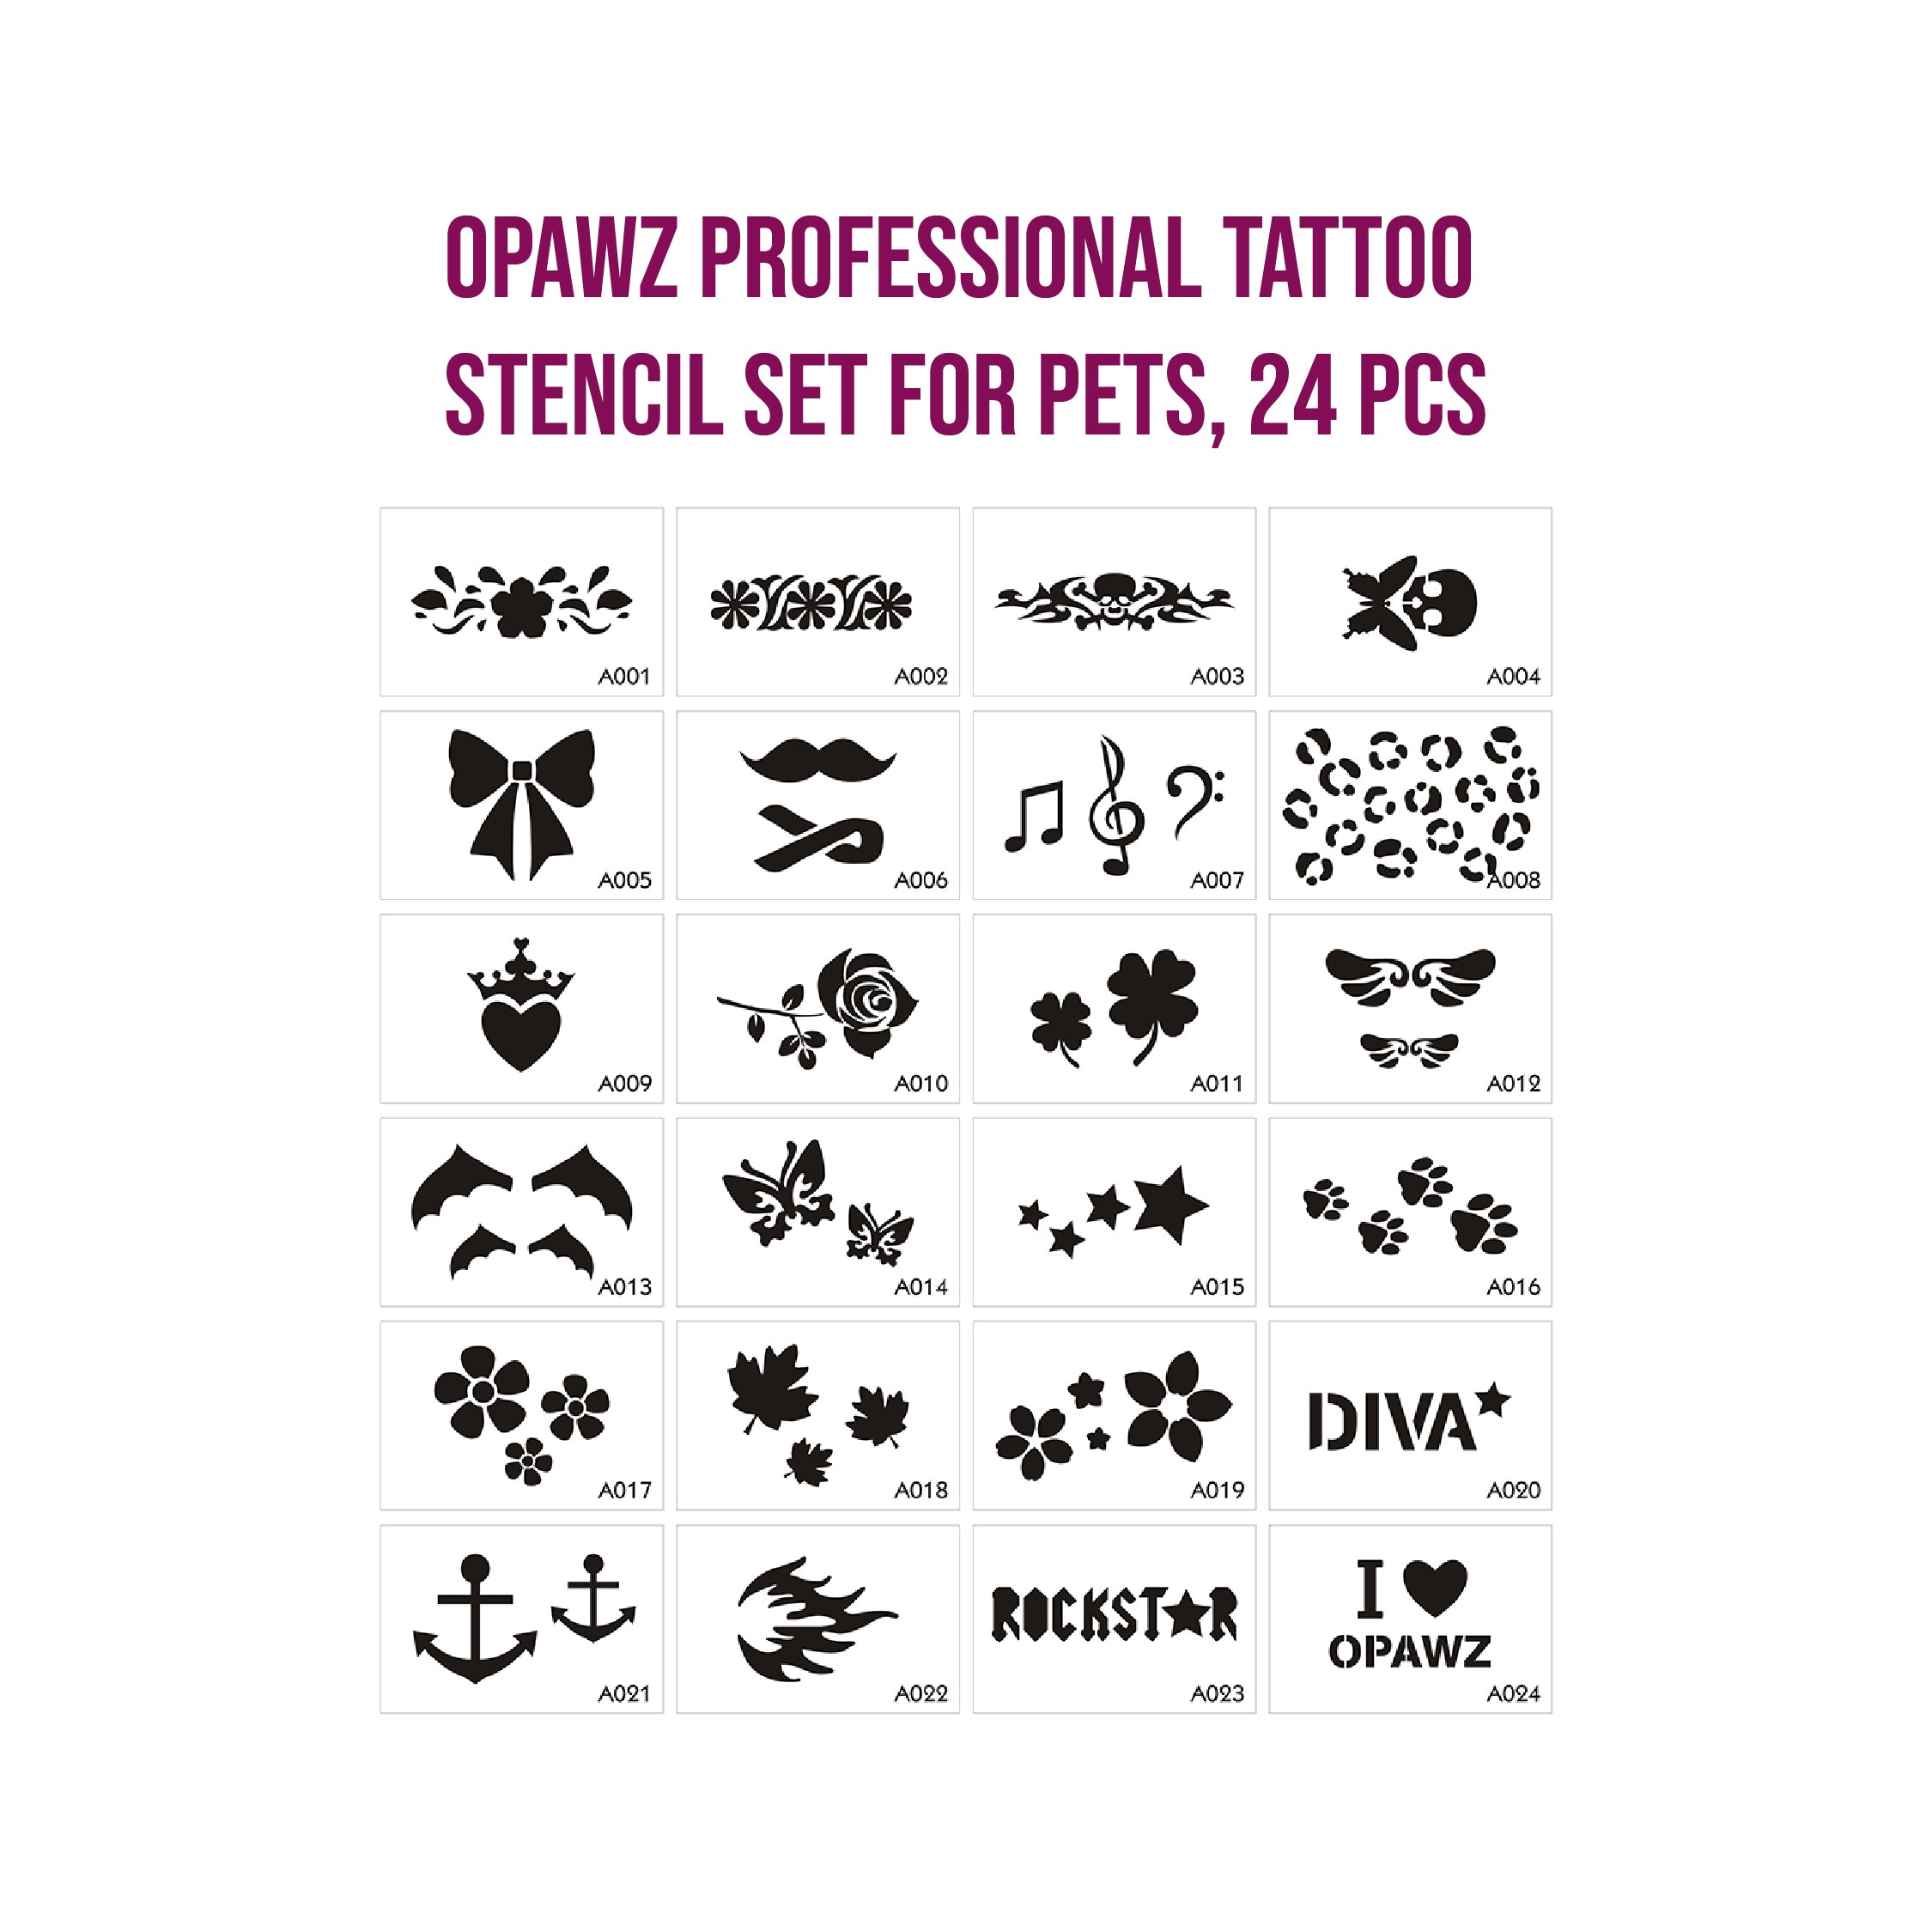 Opawz Professional Tattoo Stencil Set for pets, 24 Pcs